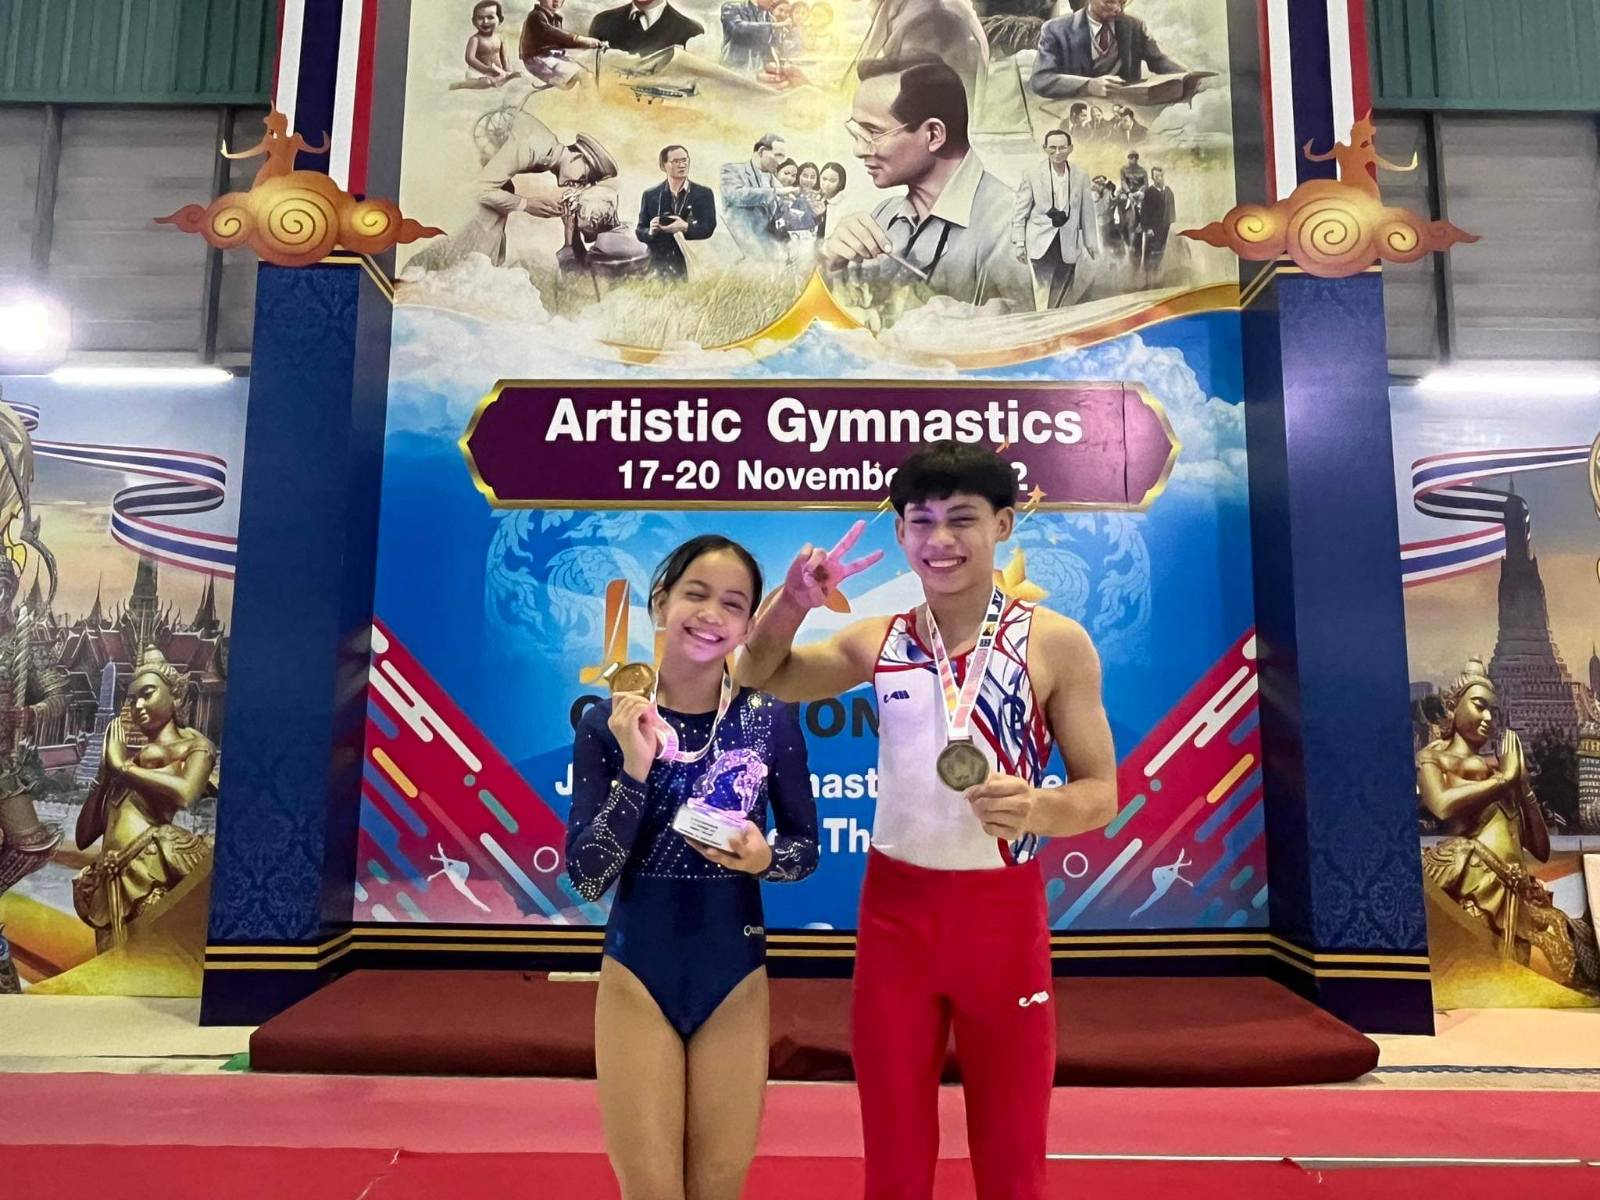 Karl and Elaiza Yulo are two young Filipino gymnasts.